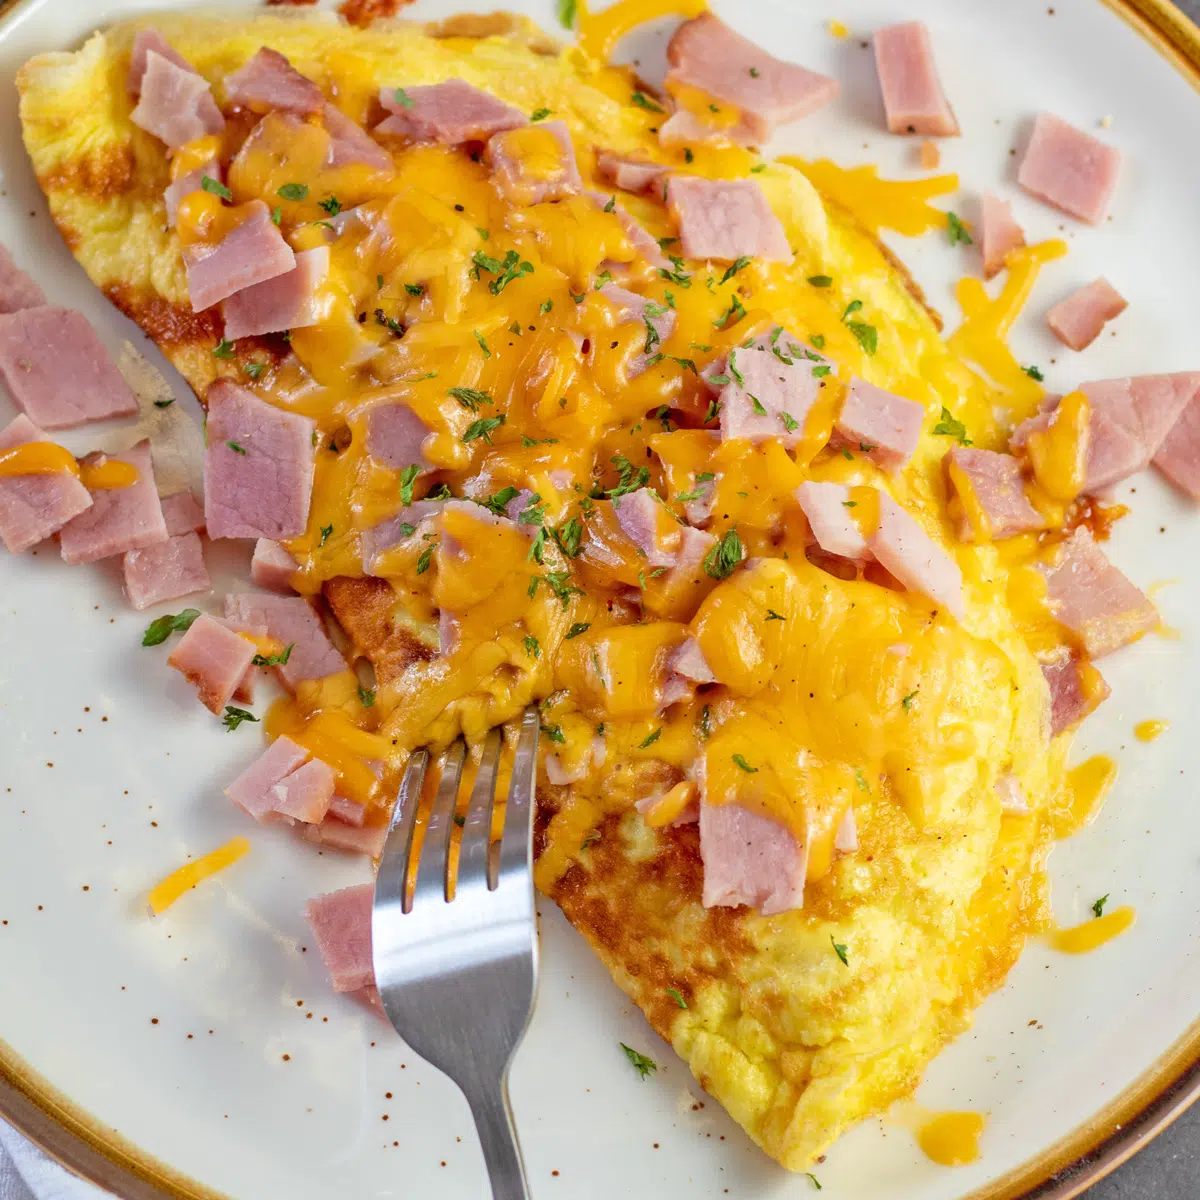 Chutná omeleta se šunkou a sýrem na hnědém talíři se světle hnědým okrajem a hroty vidličky poblíž omelety.